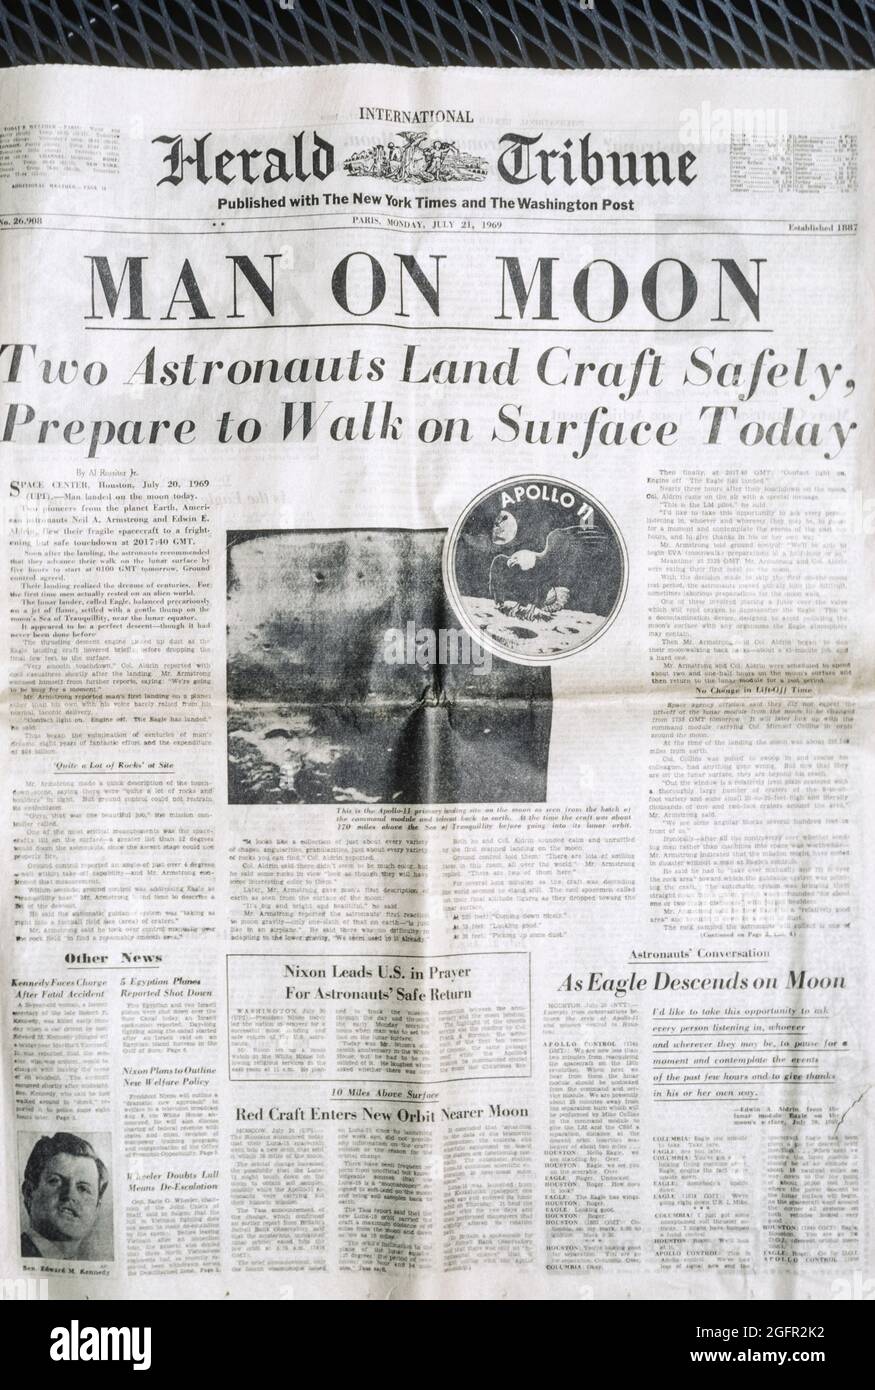 International Herald Tribune Headline, 21 juillet 1969: Man on Moon. Banque D'Images